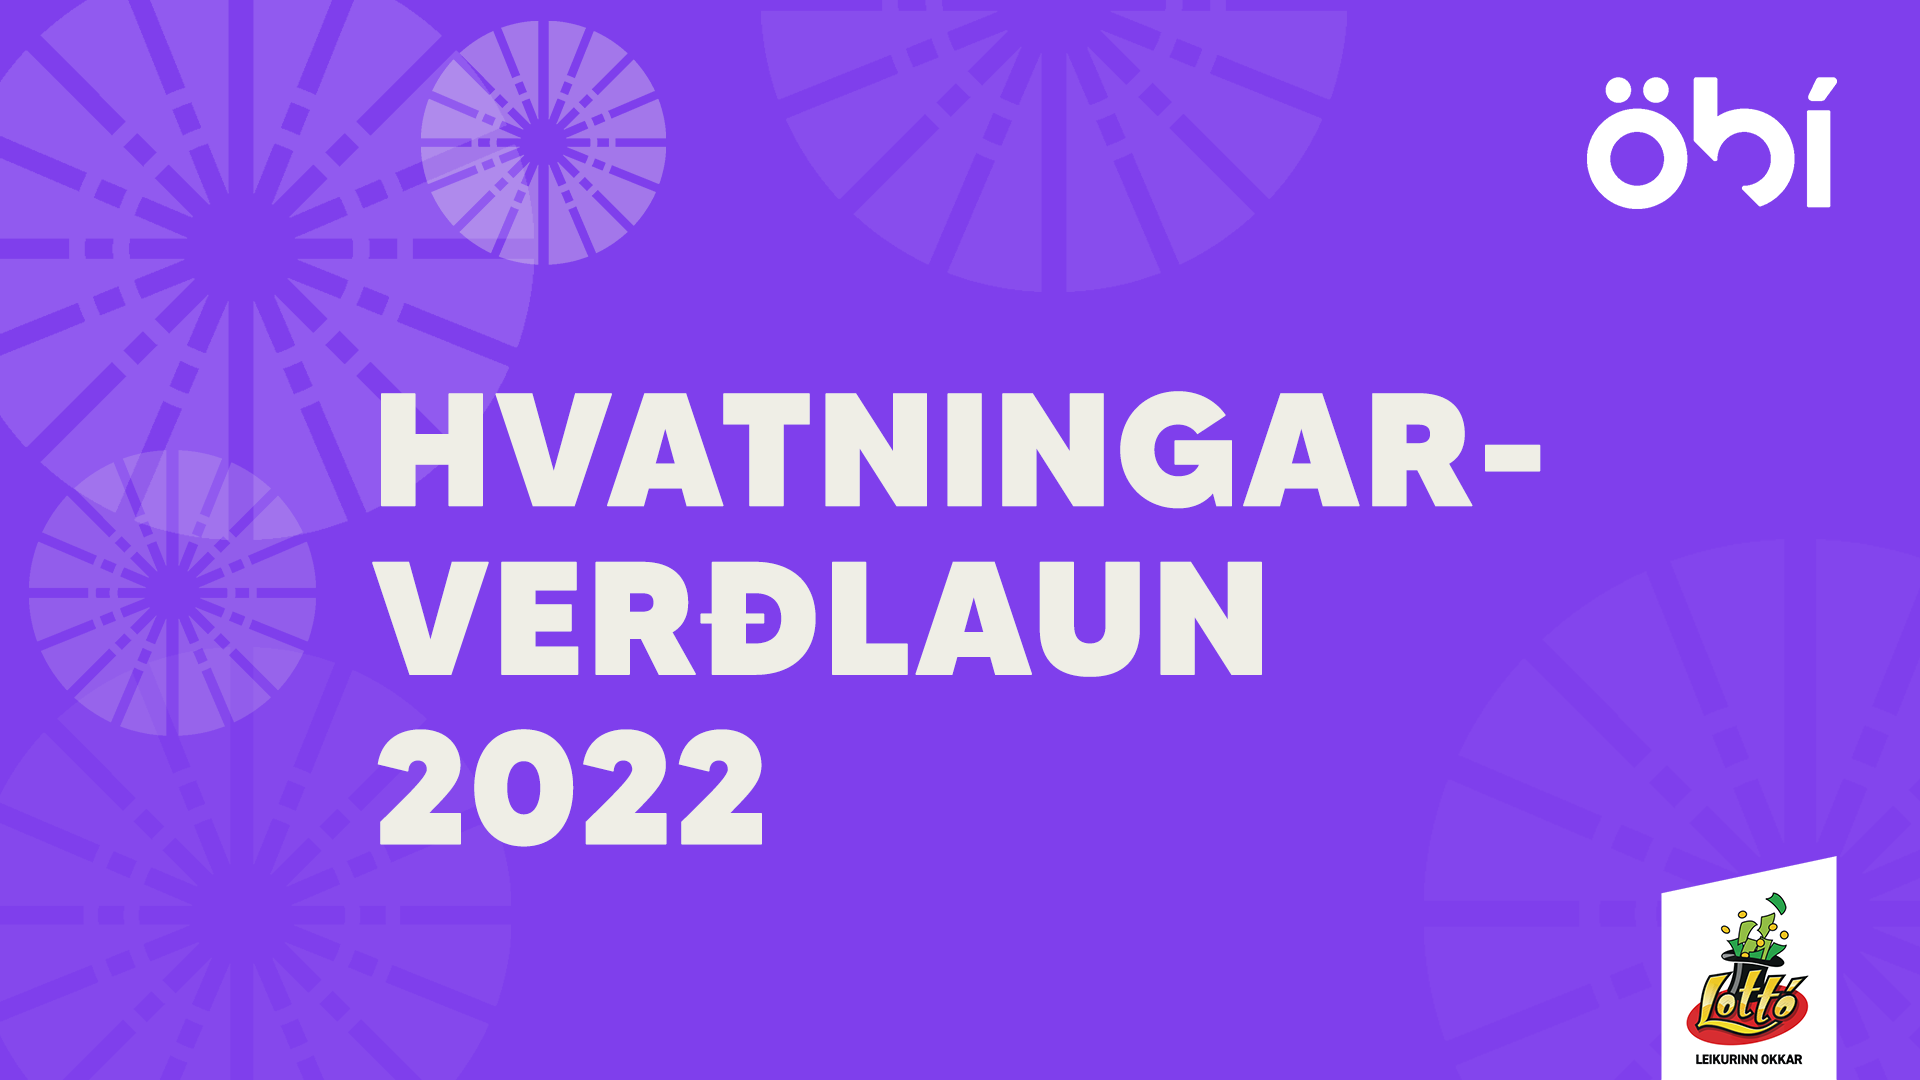 Tengill á upptöku af Hvatningarverðlaunum 2022